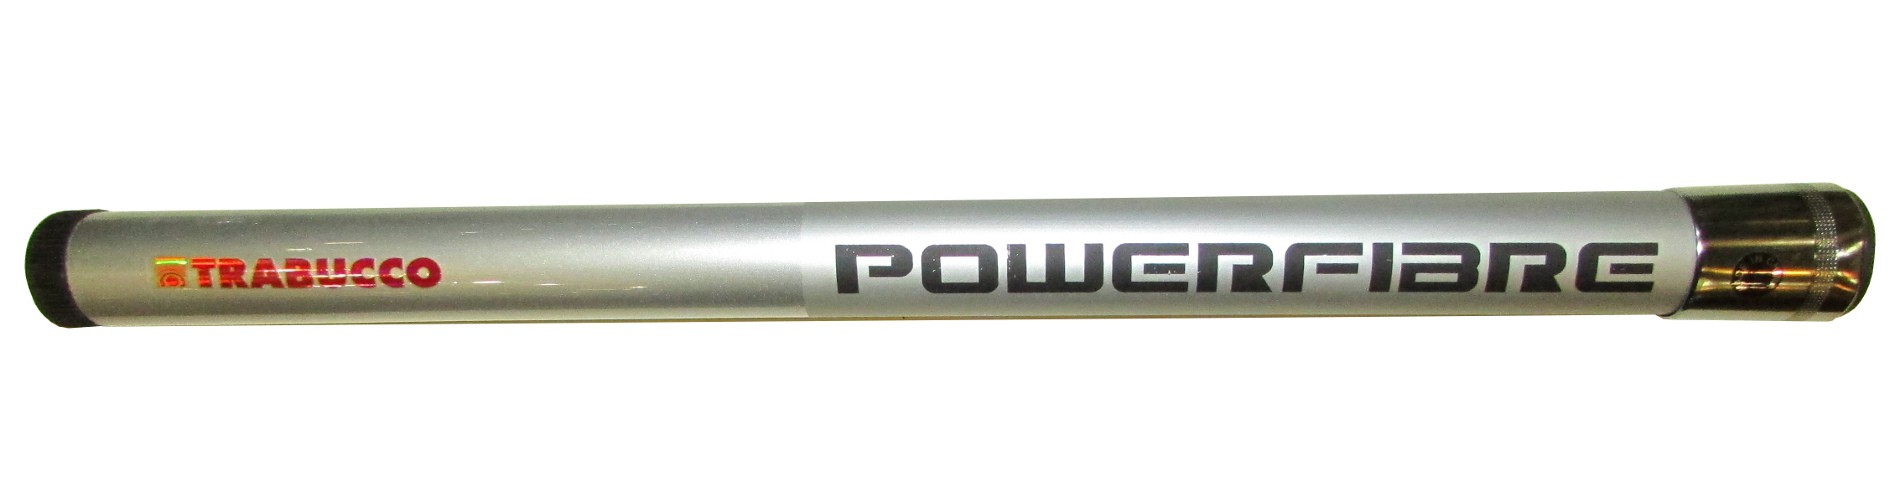 Ручка для подсачека Trabucco Demon Powerland телескопическая 4,0м - фото 1